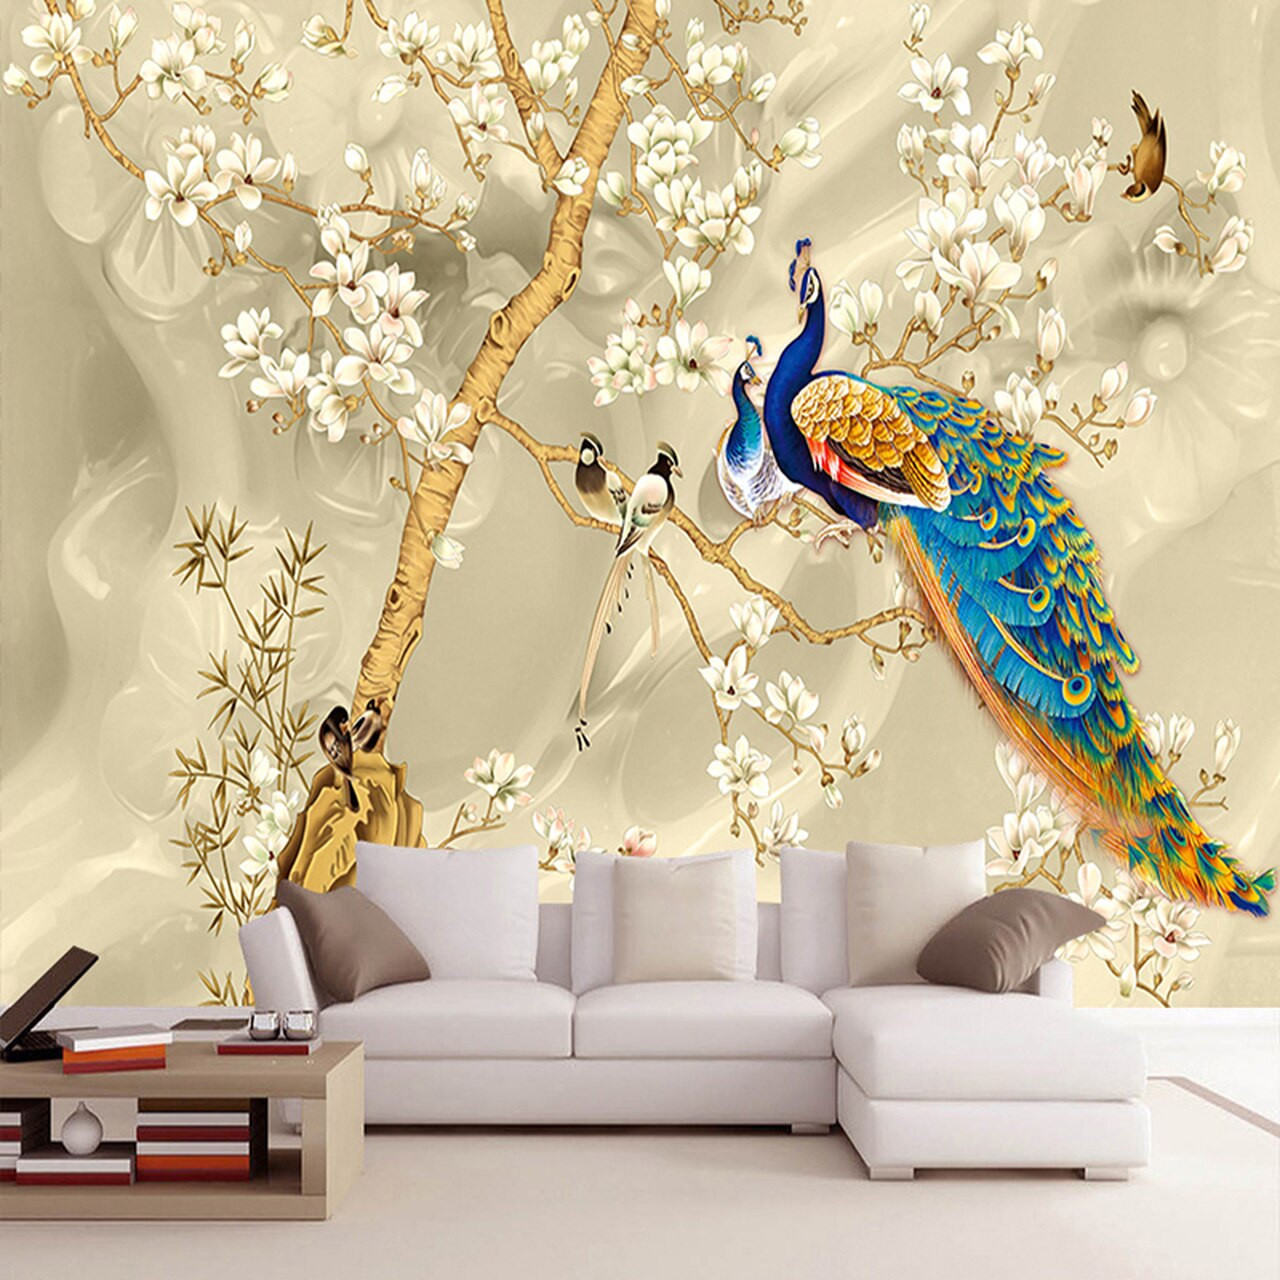 3d painting wallpaper,wallpaper,branch,wall sticker,bird,mural